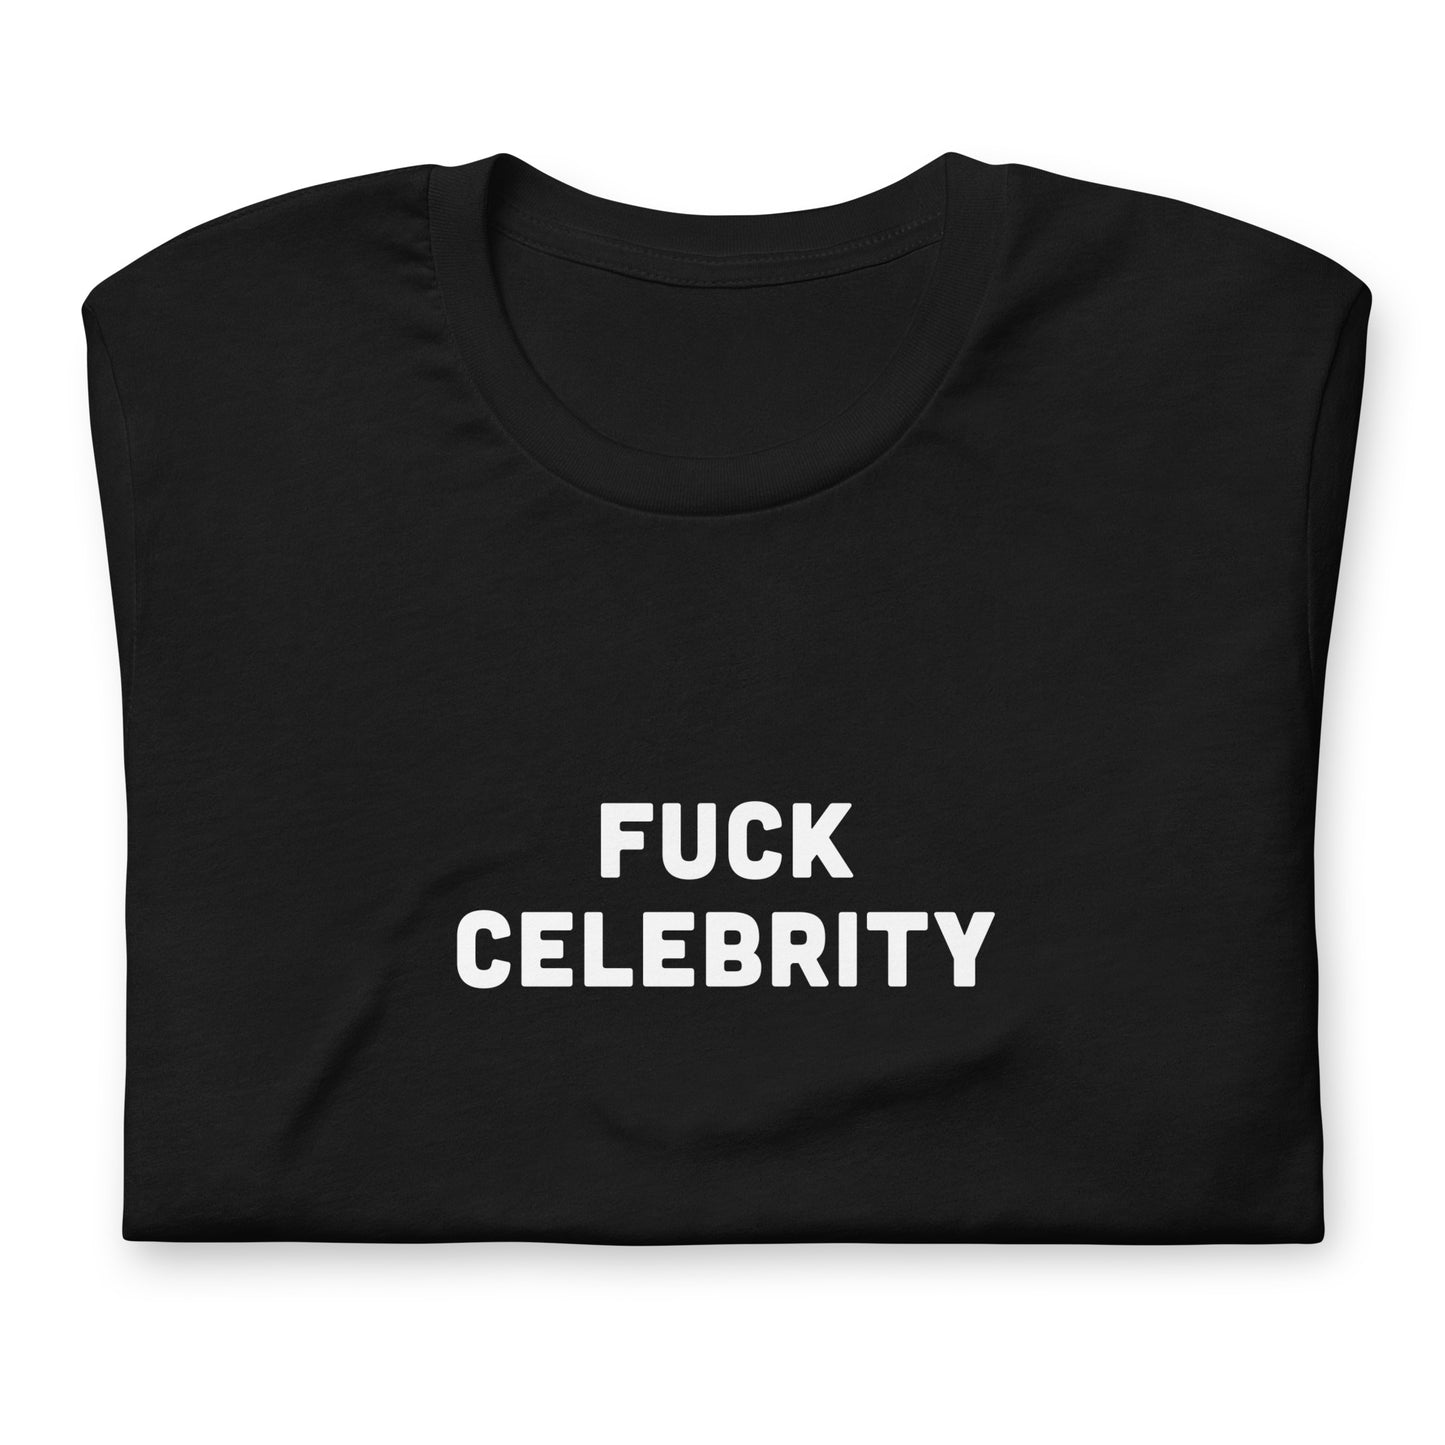 Fuck Celebrity T-Shirt Size M Color Black